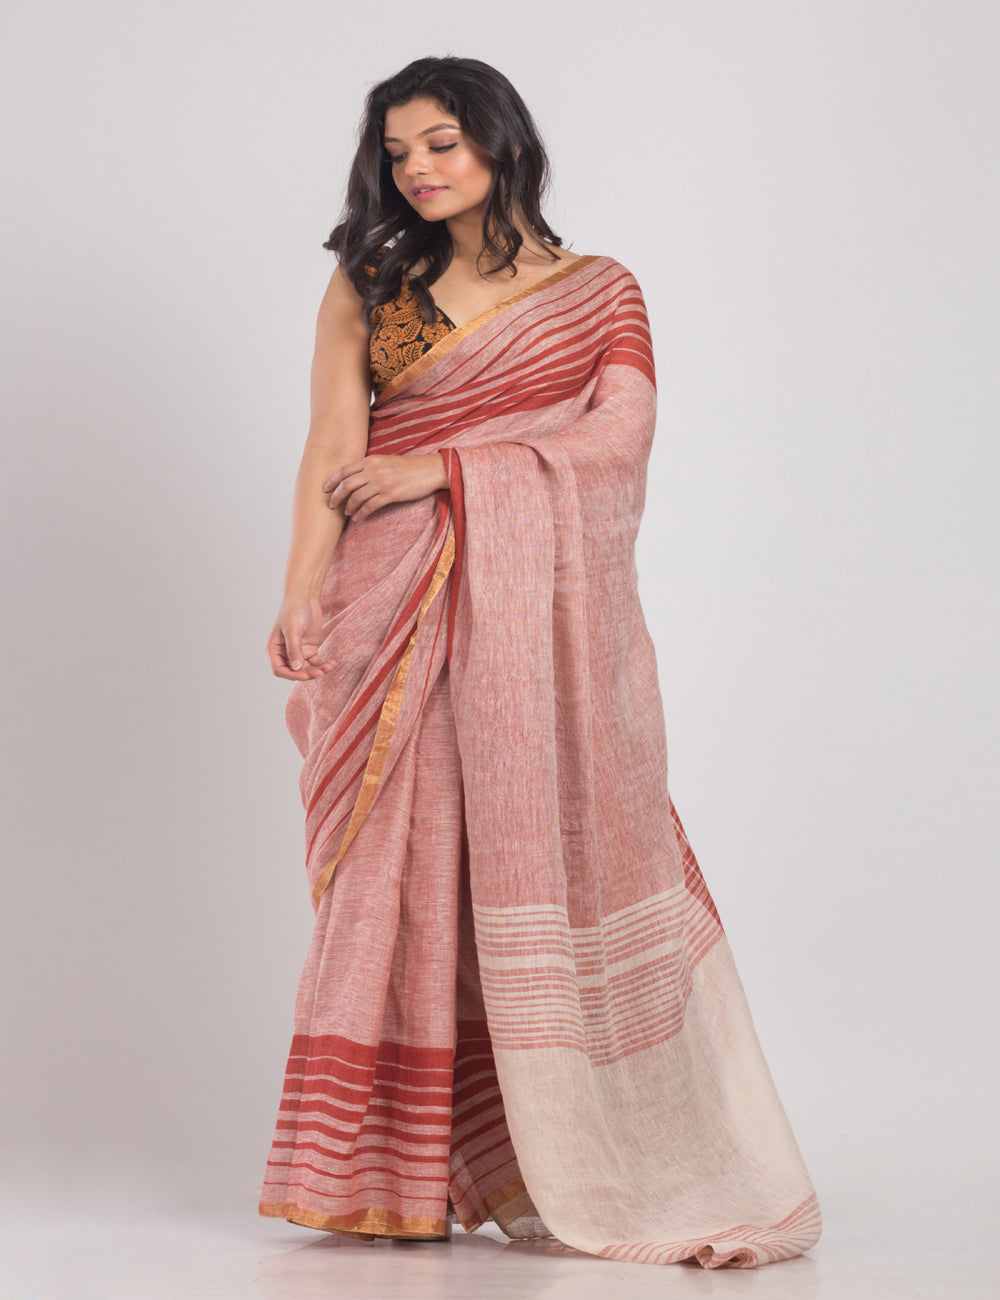 Multicolor striped border handwoven linen sari